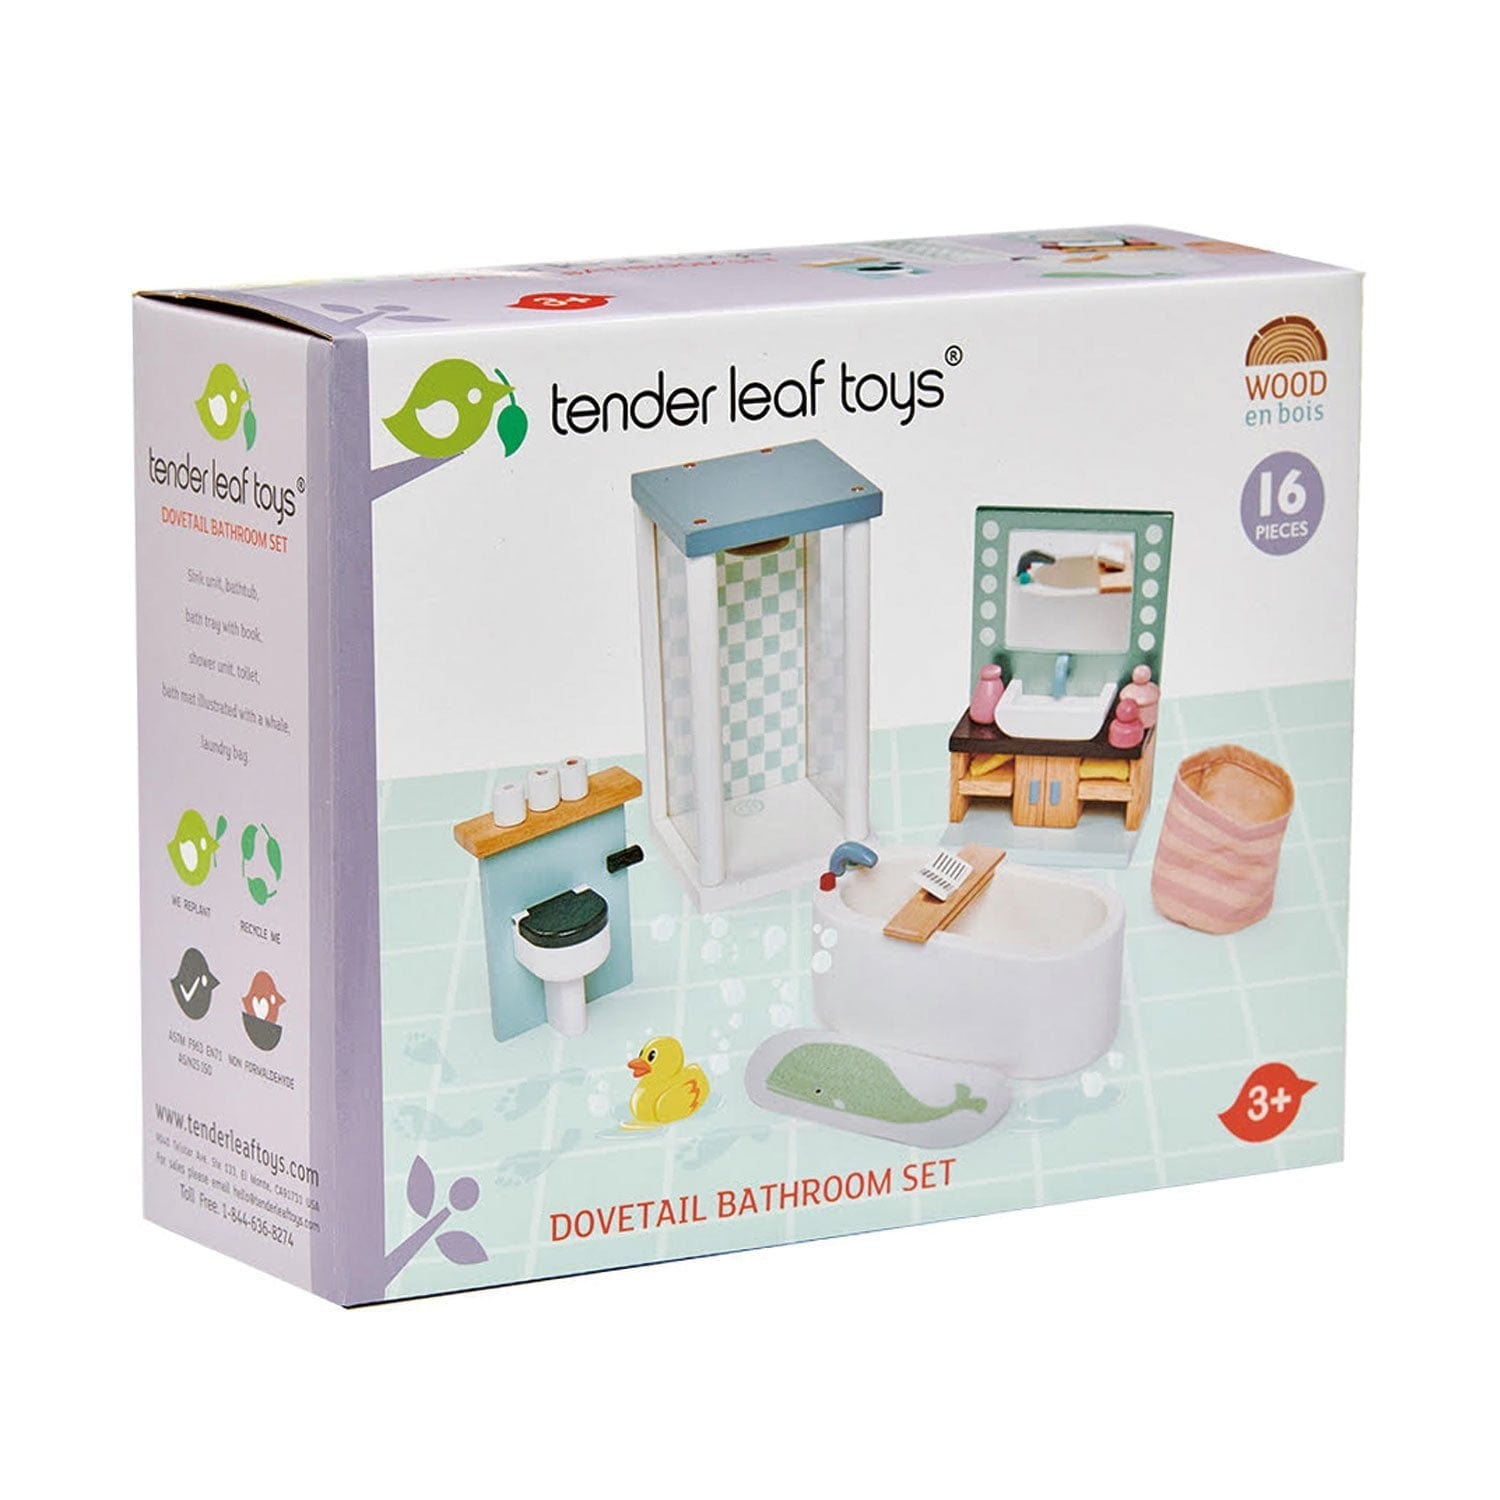 Tender Leaf Toys wooden toy Tender Leaf Toys Doll House Bathroom Furniture Set